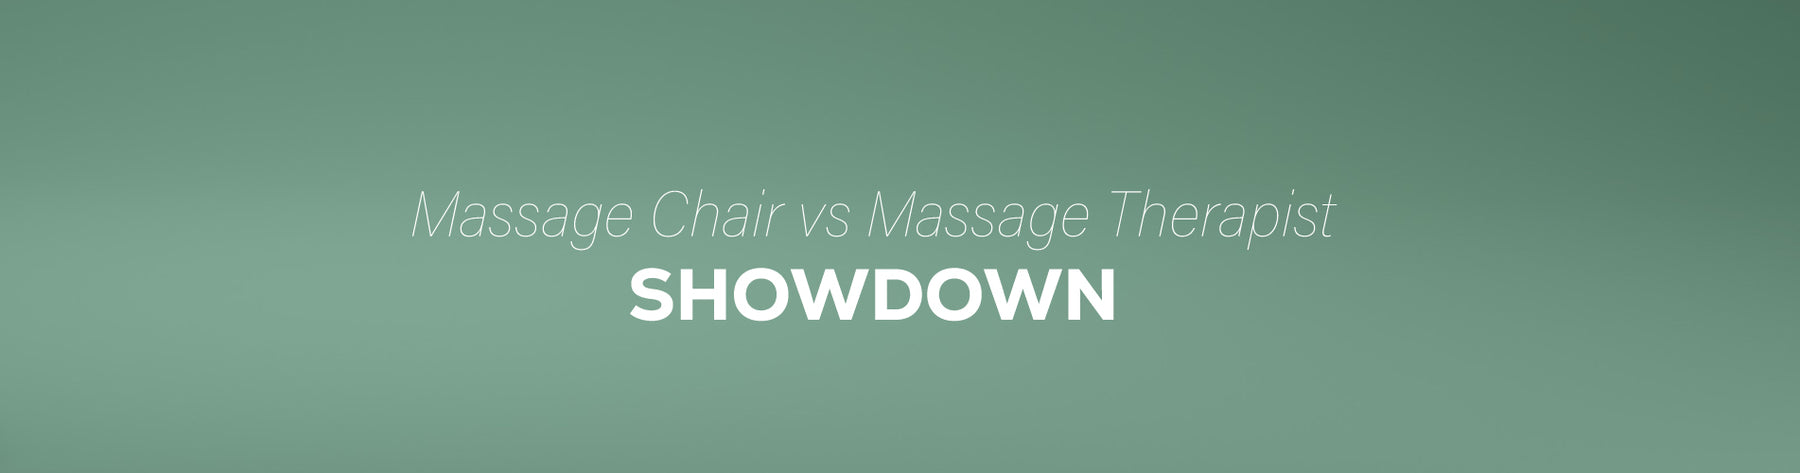 Massage Chairs vs Massage Therapy